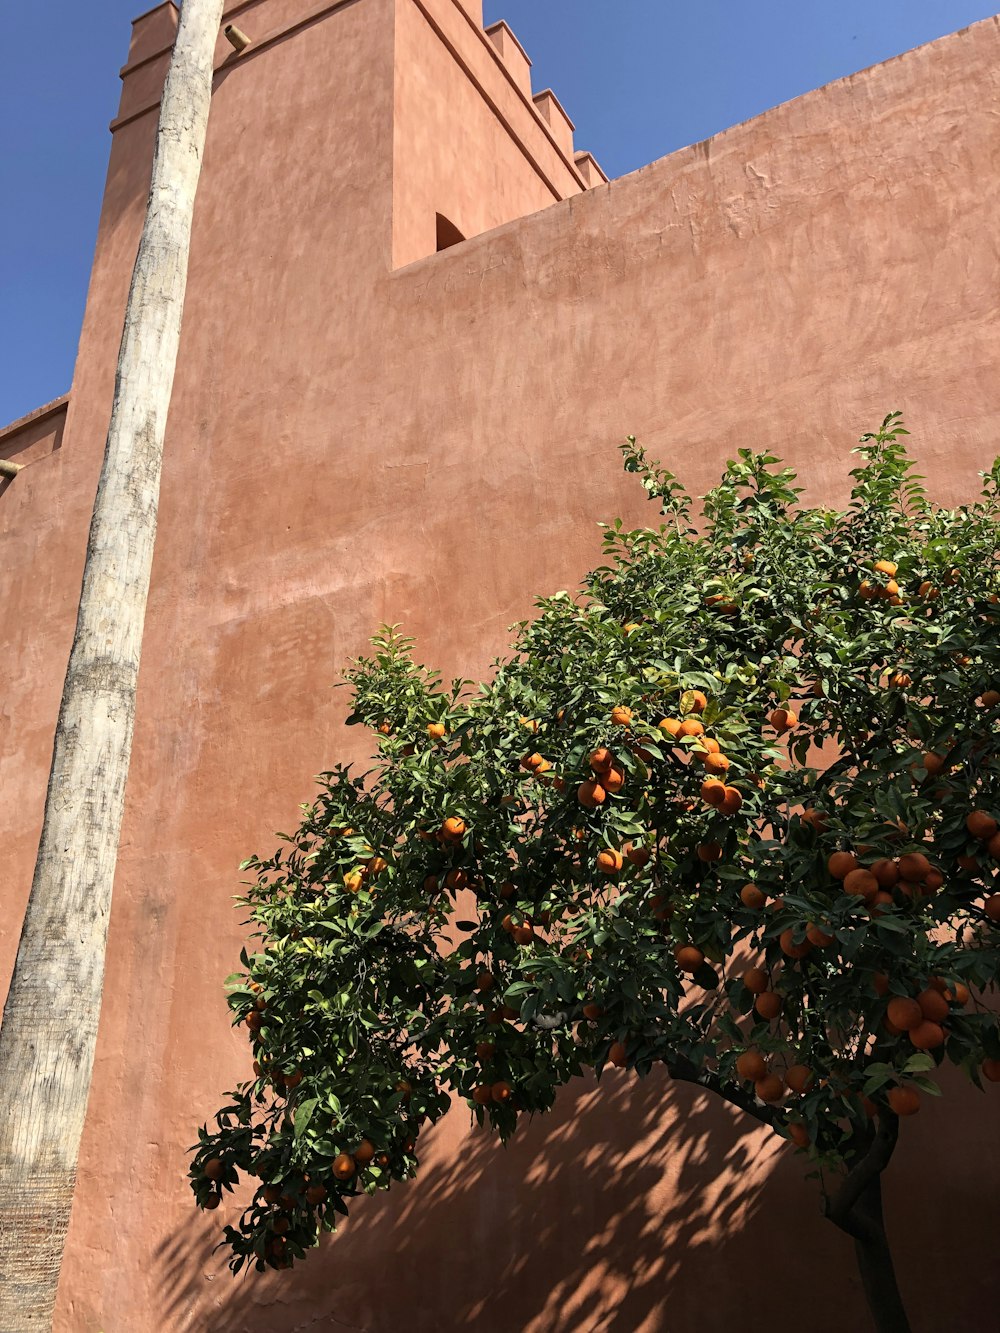 arancio oltre all'edificio in cemento marrone